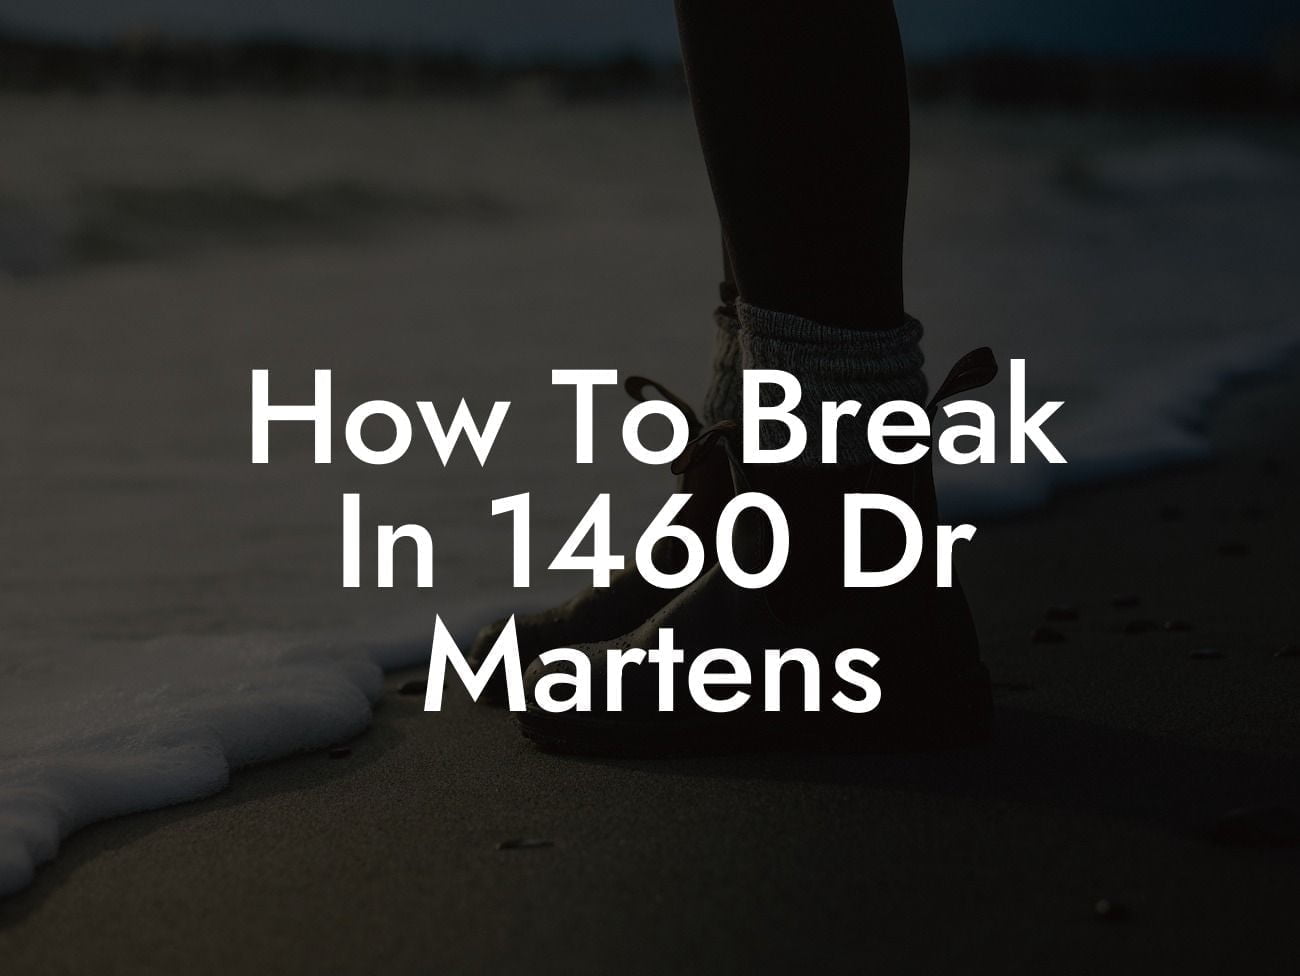 How To Break In 1460 Dr Martens